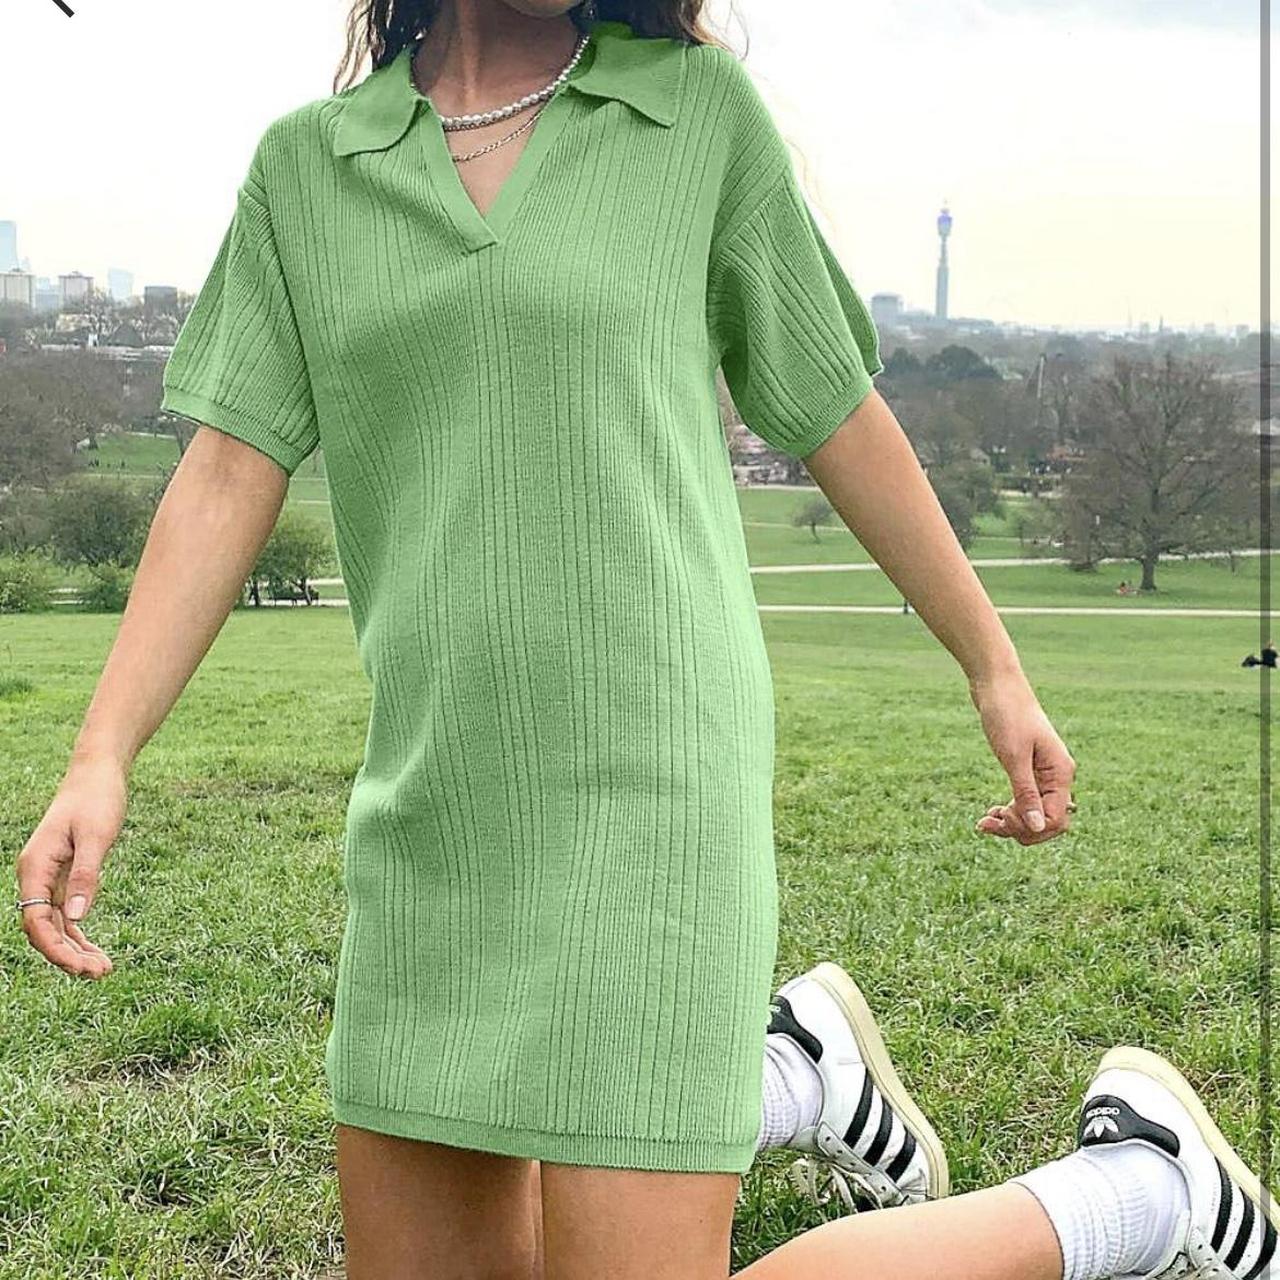 ASOS dress Green knitted Summer dress with Collar... - Depop